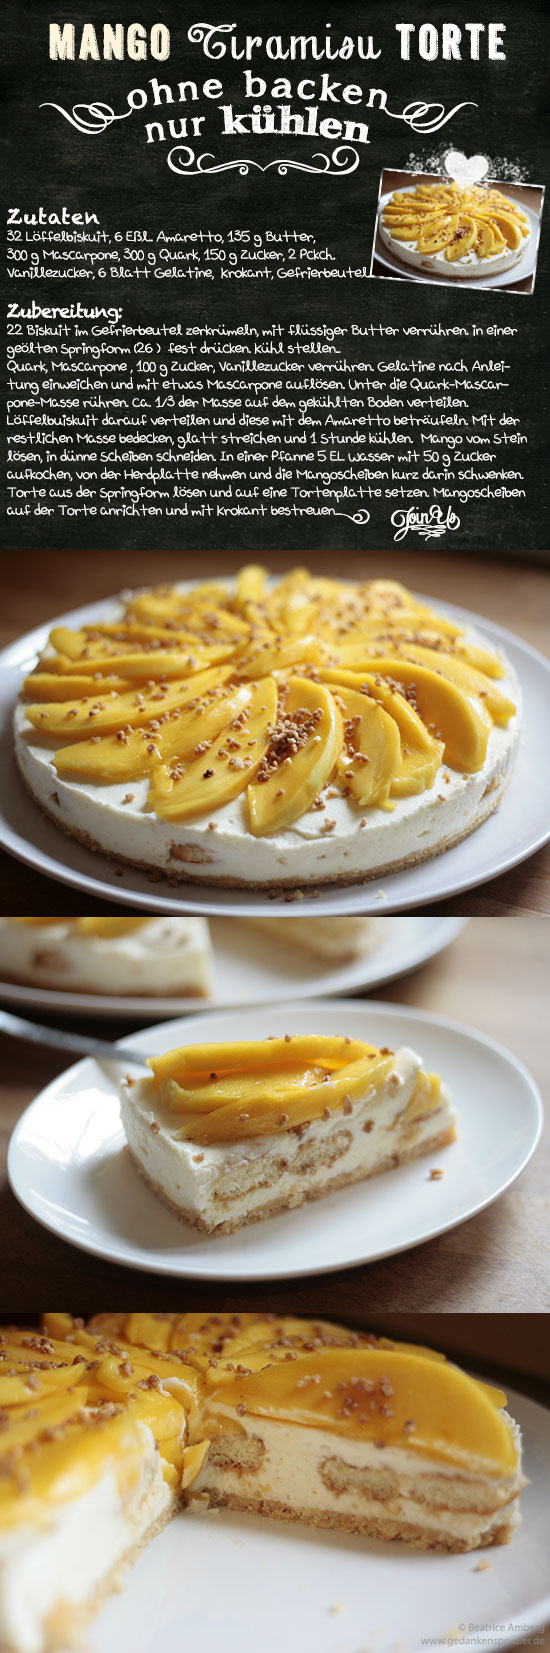 Mango-Tirmisu-Torte